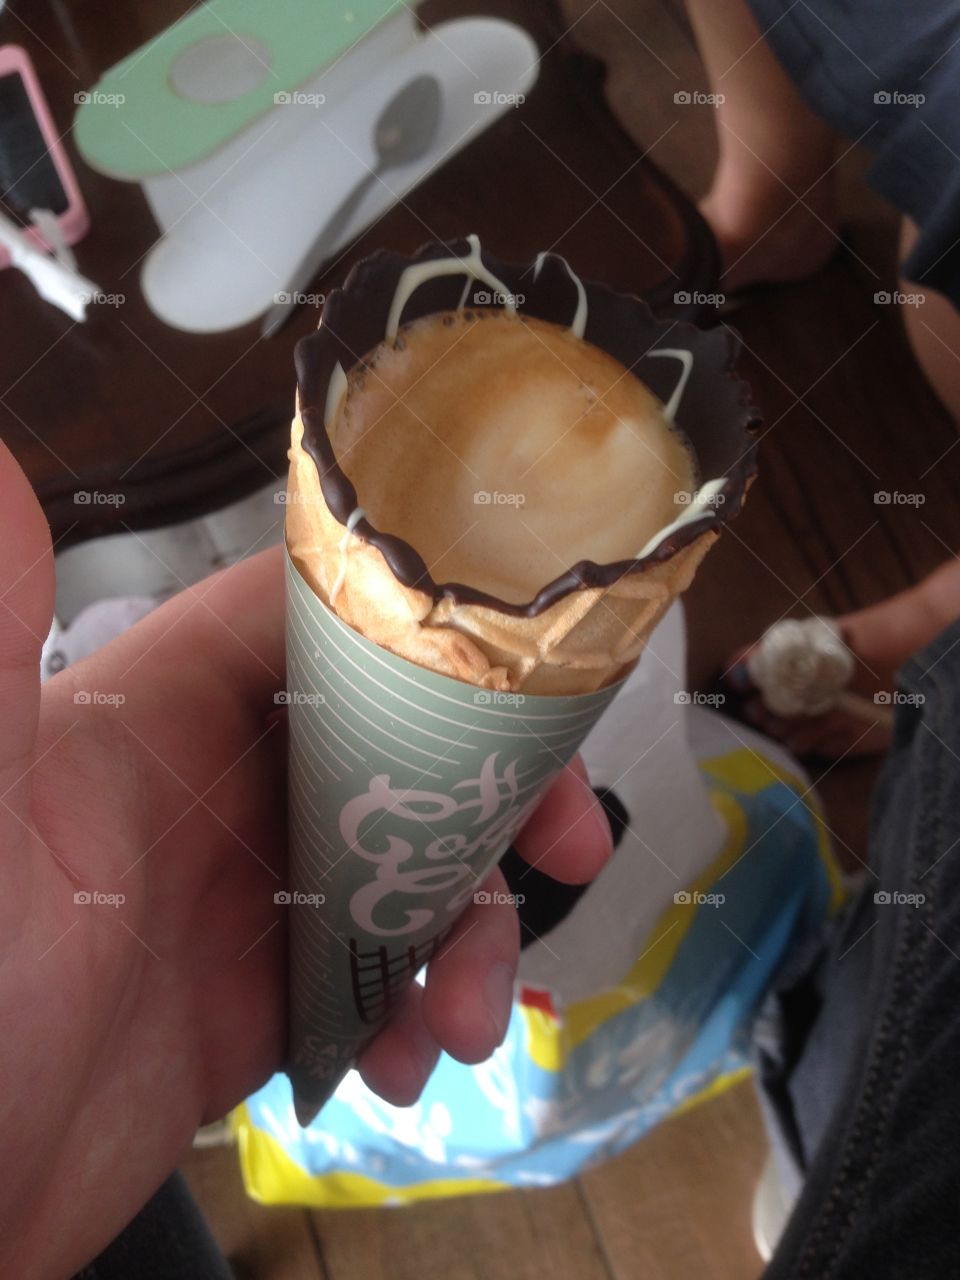 Coffee in a cone = heaven